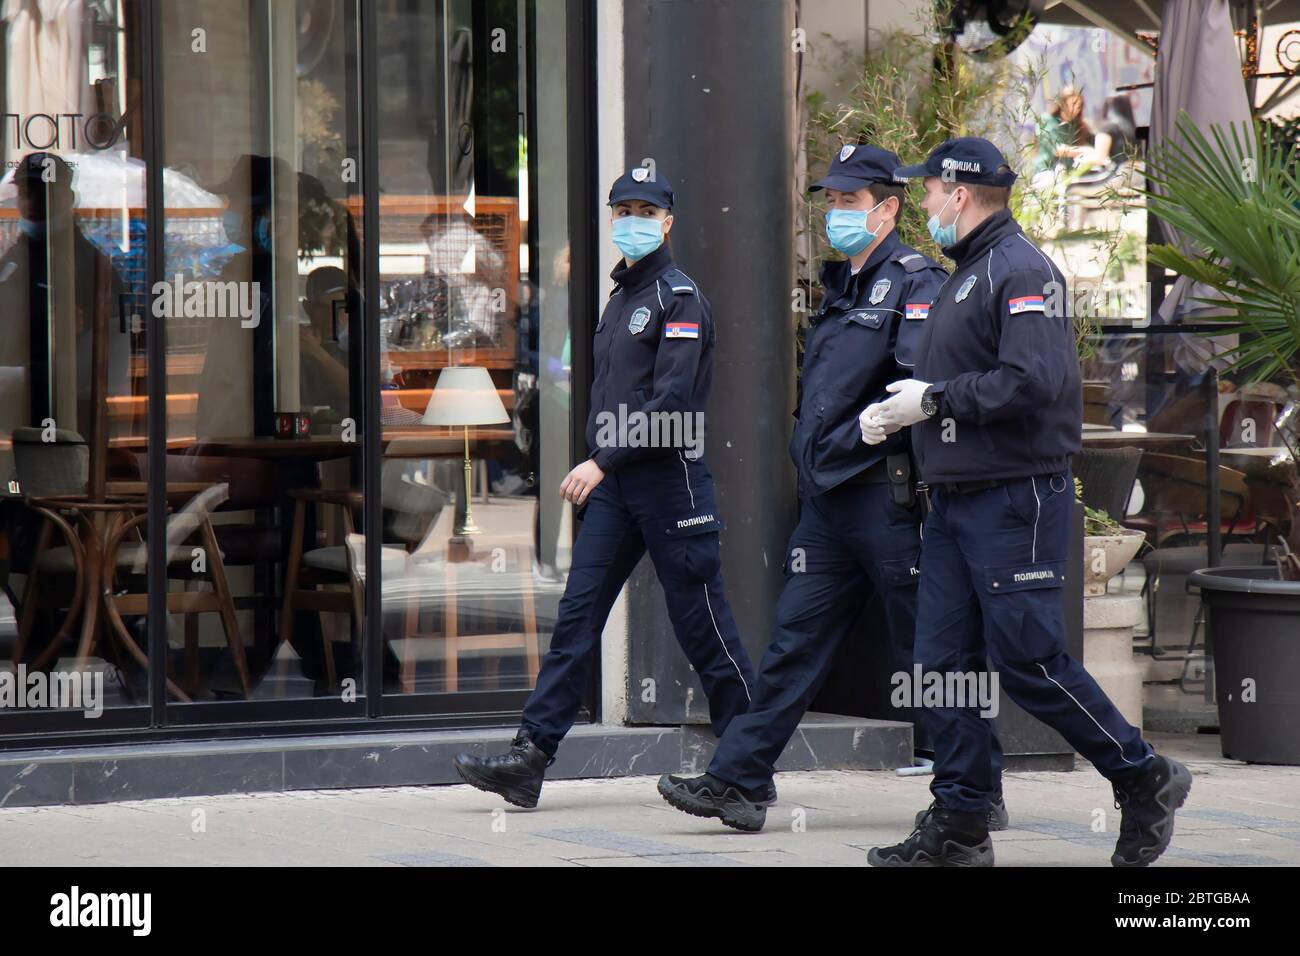 Belgrade, Serbie - 21 mai 2020 : policier et policier en service, portant des masques chirurgicaux tout en marchant dans la rue et en parlant Banque D'Images